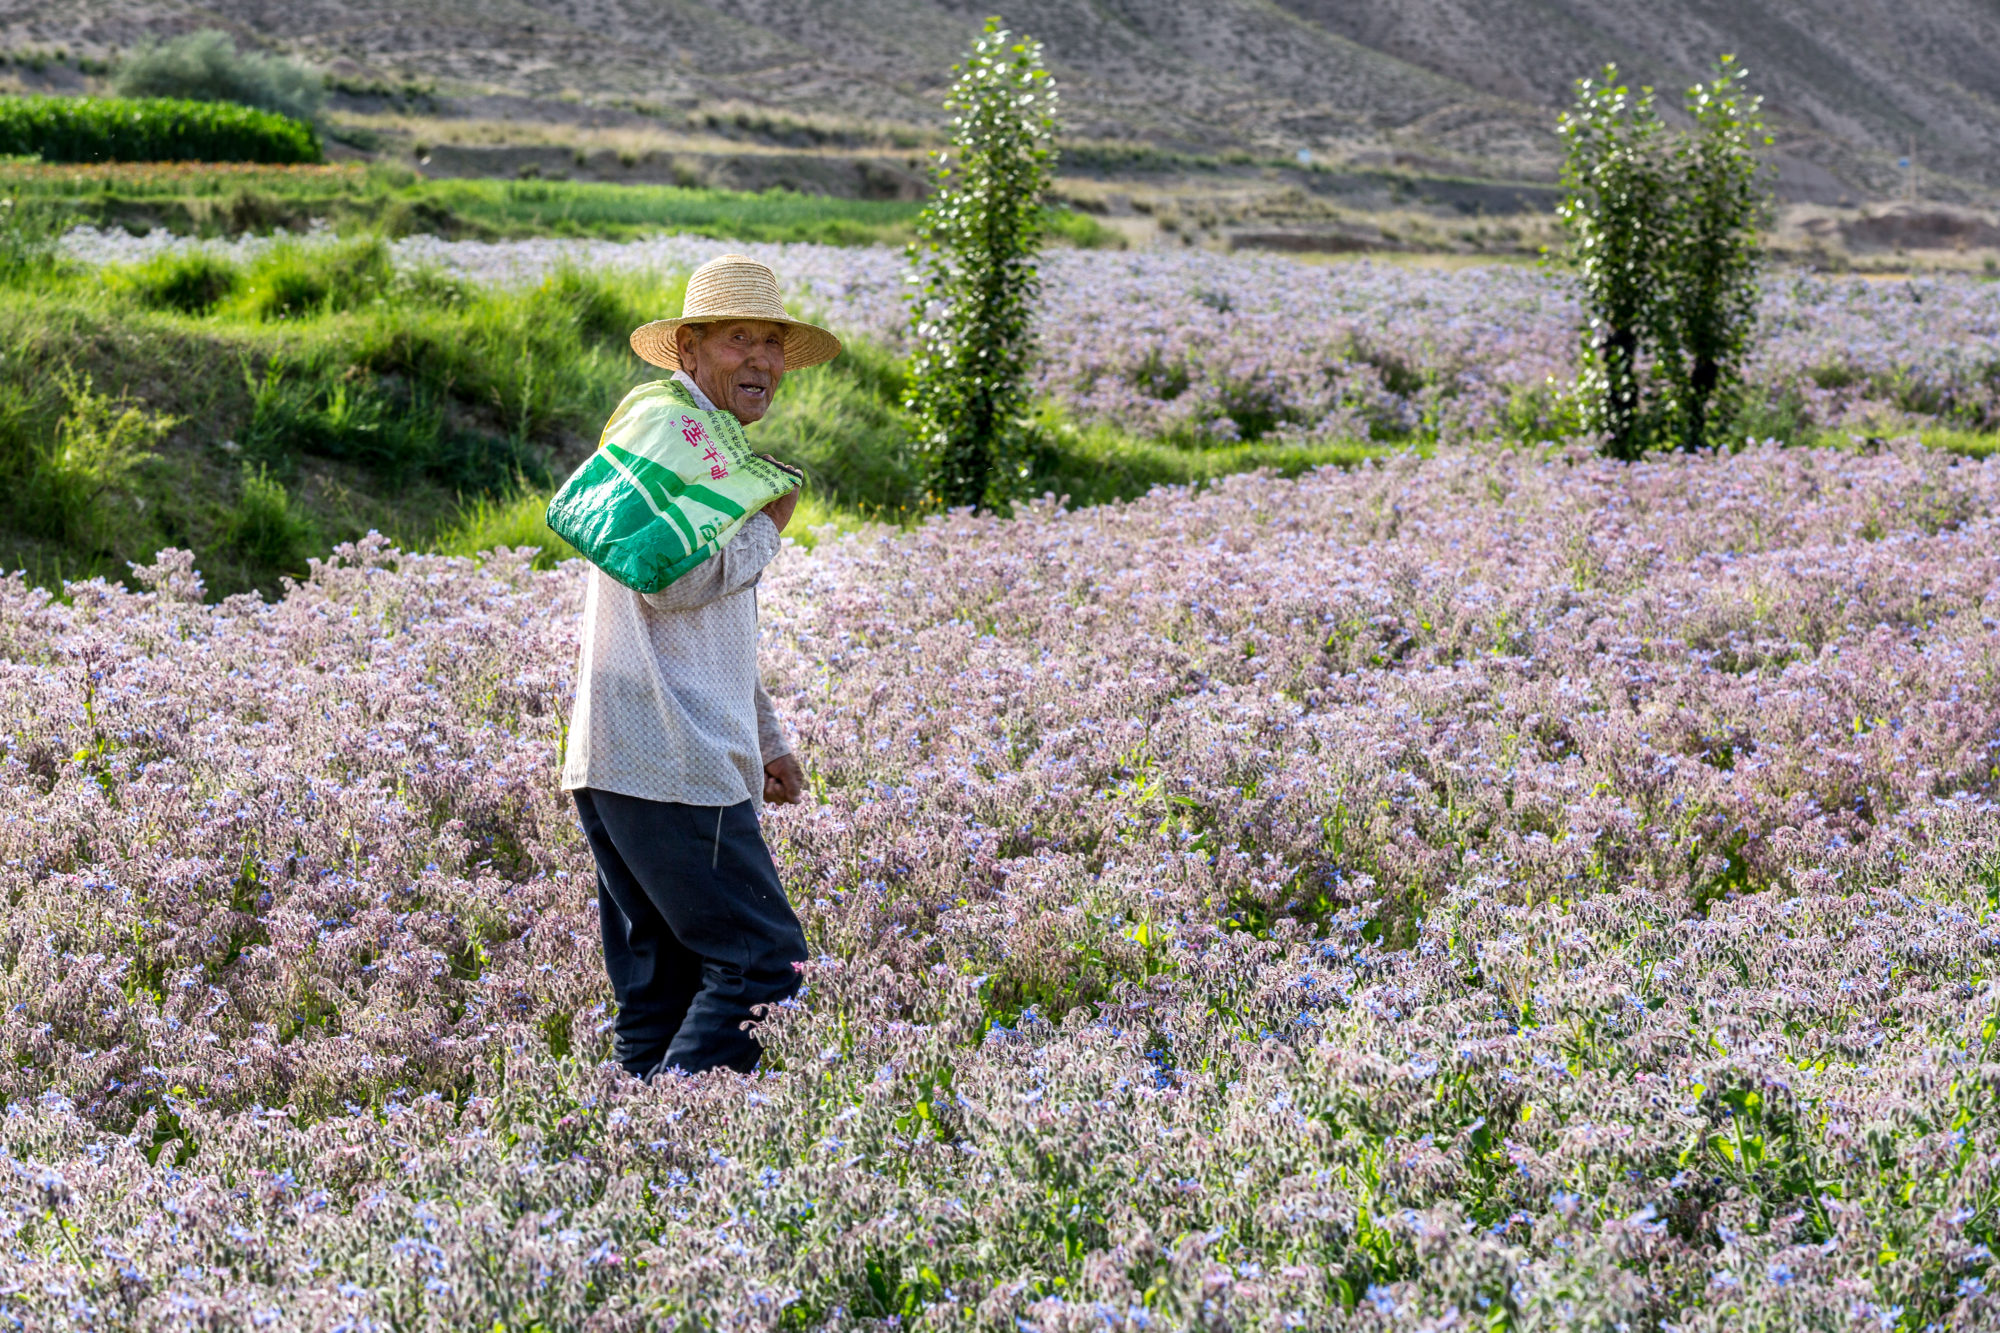 Foto di Sunan. Un uomo cammina in un campo fiorito